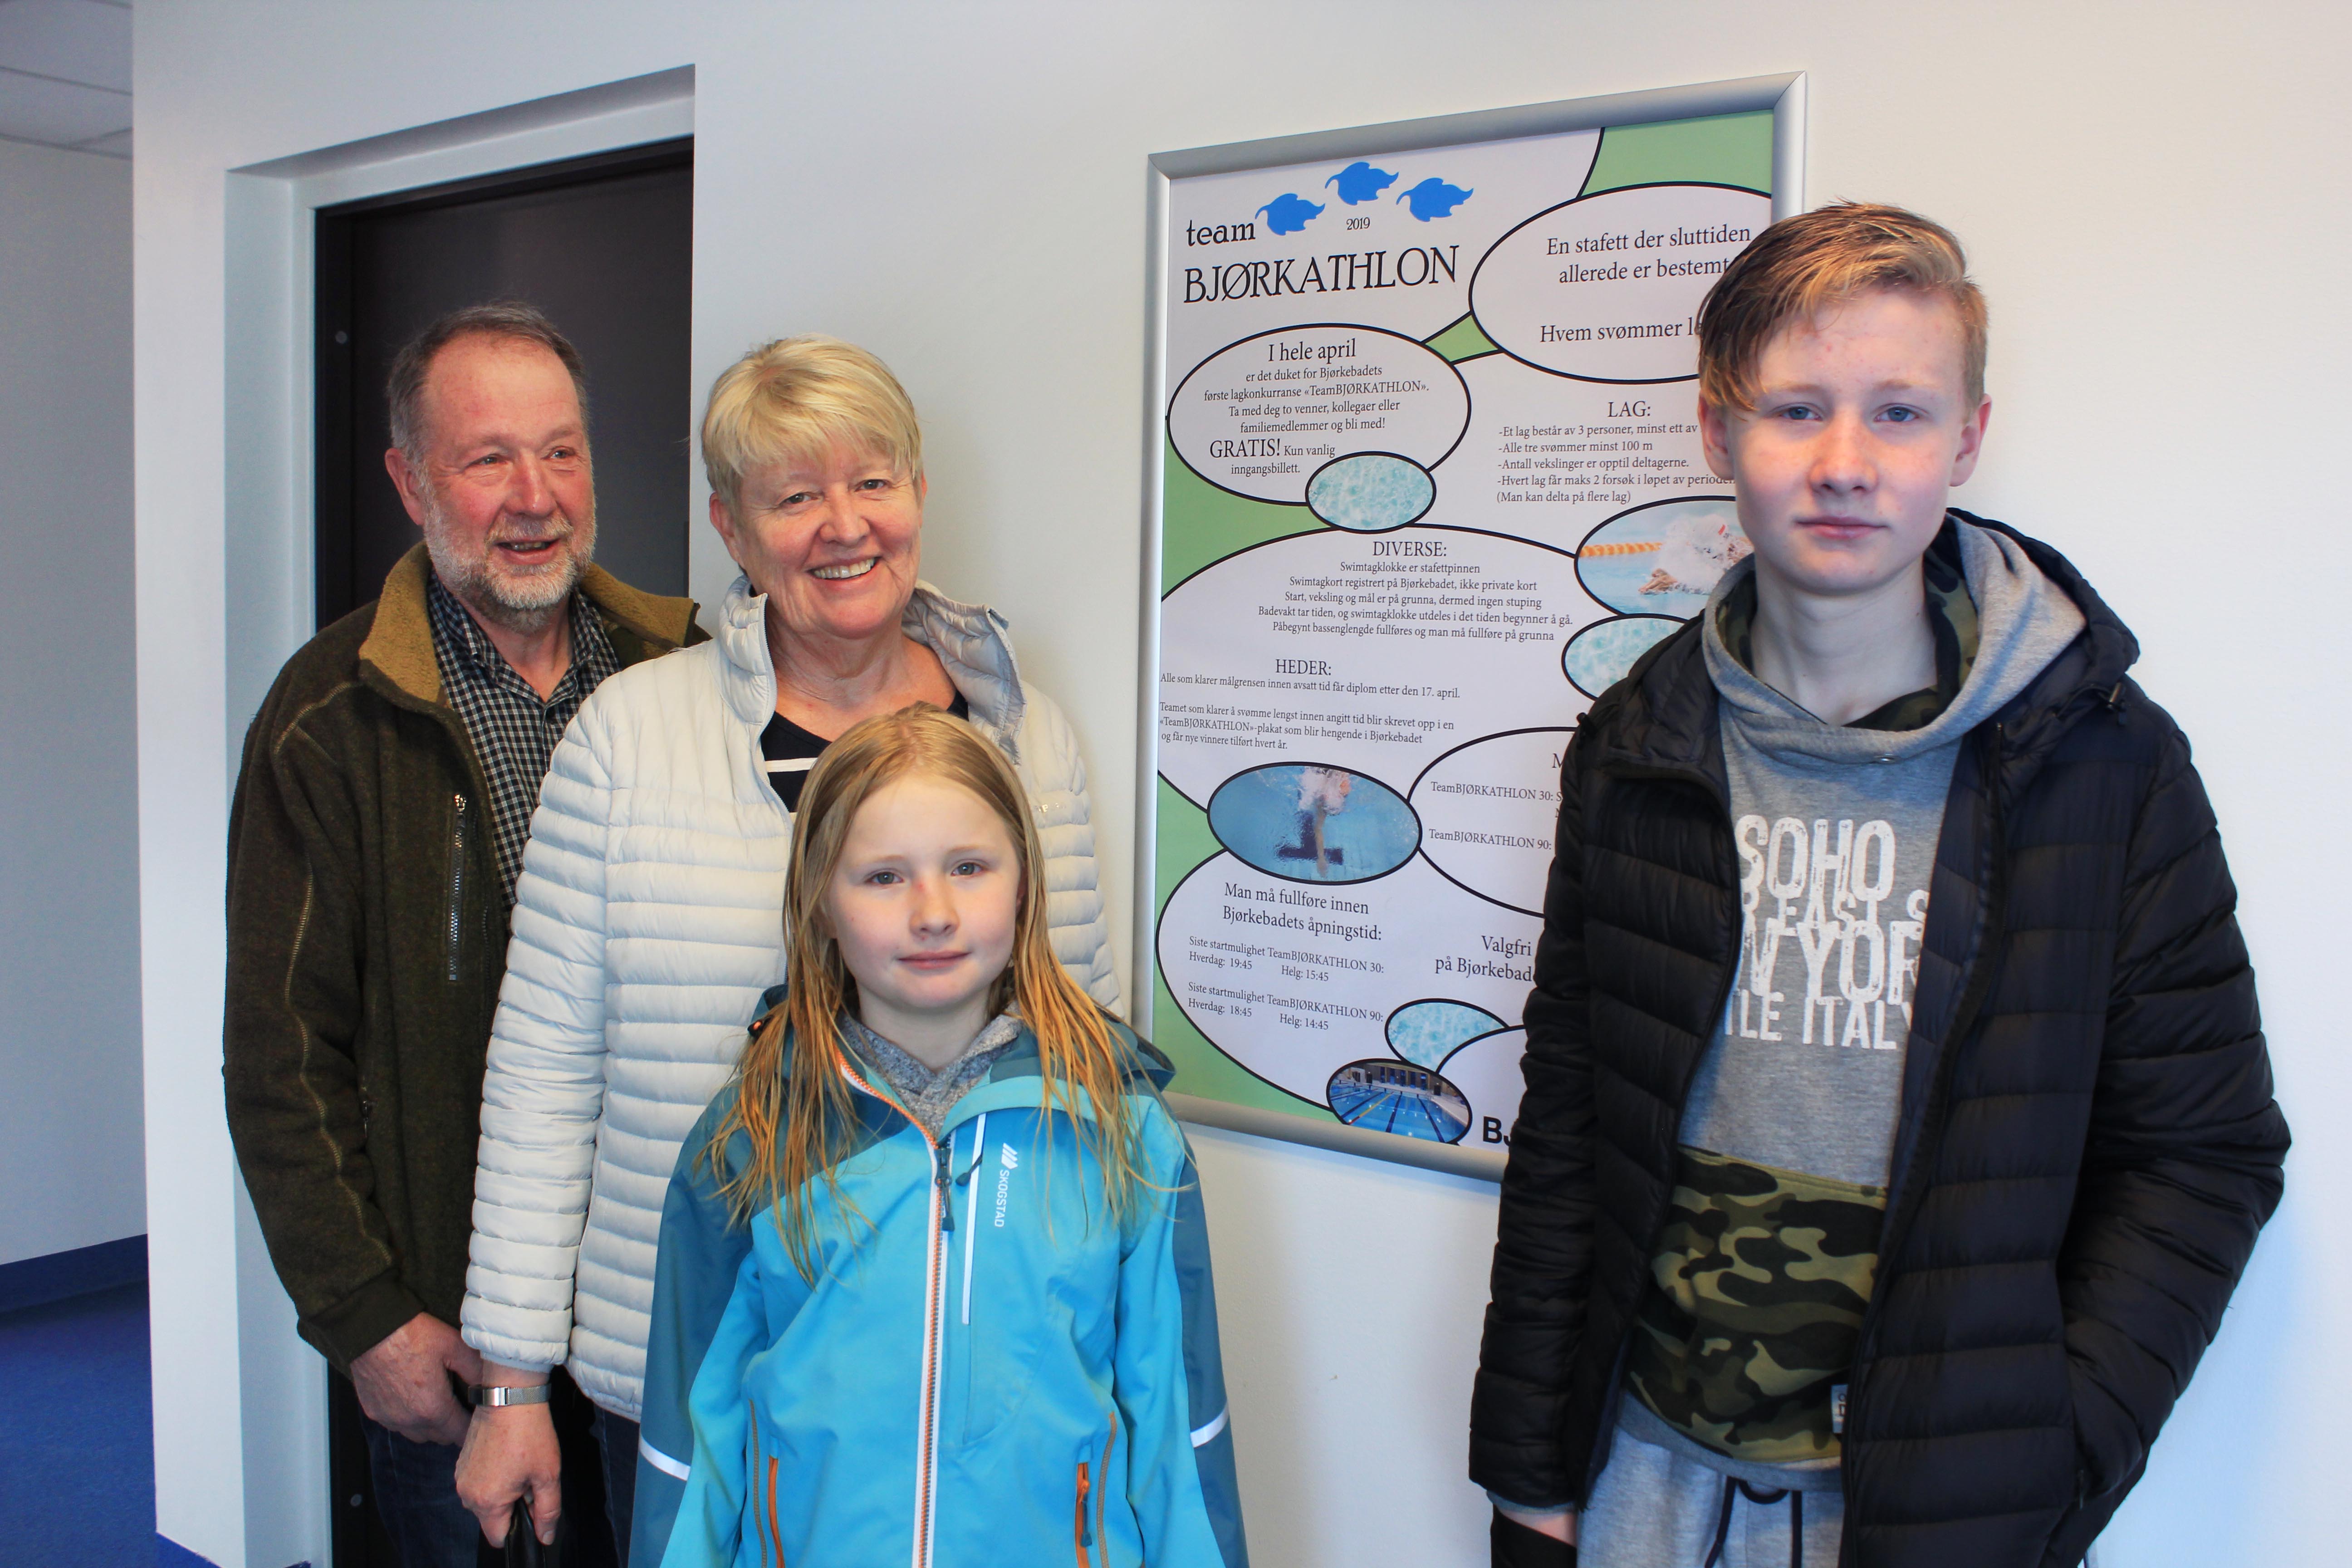 Stokkebekk besteforeldre og barnebarn foran TeamBjørkathlon plakat